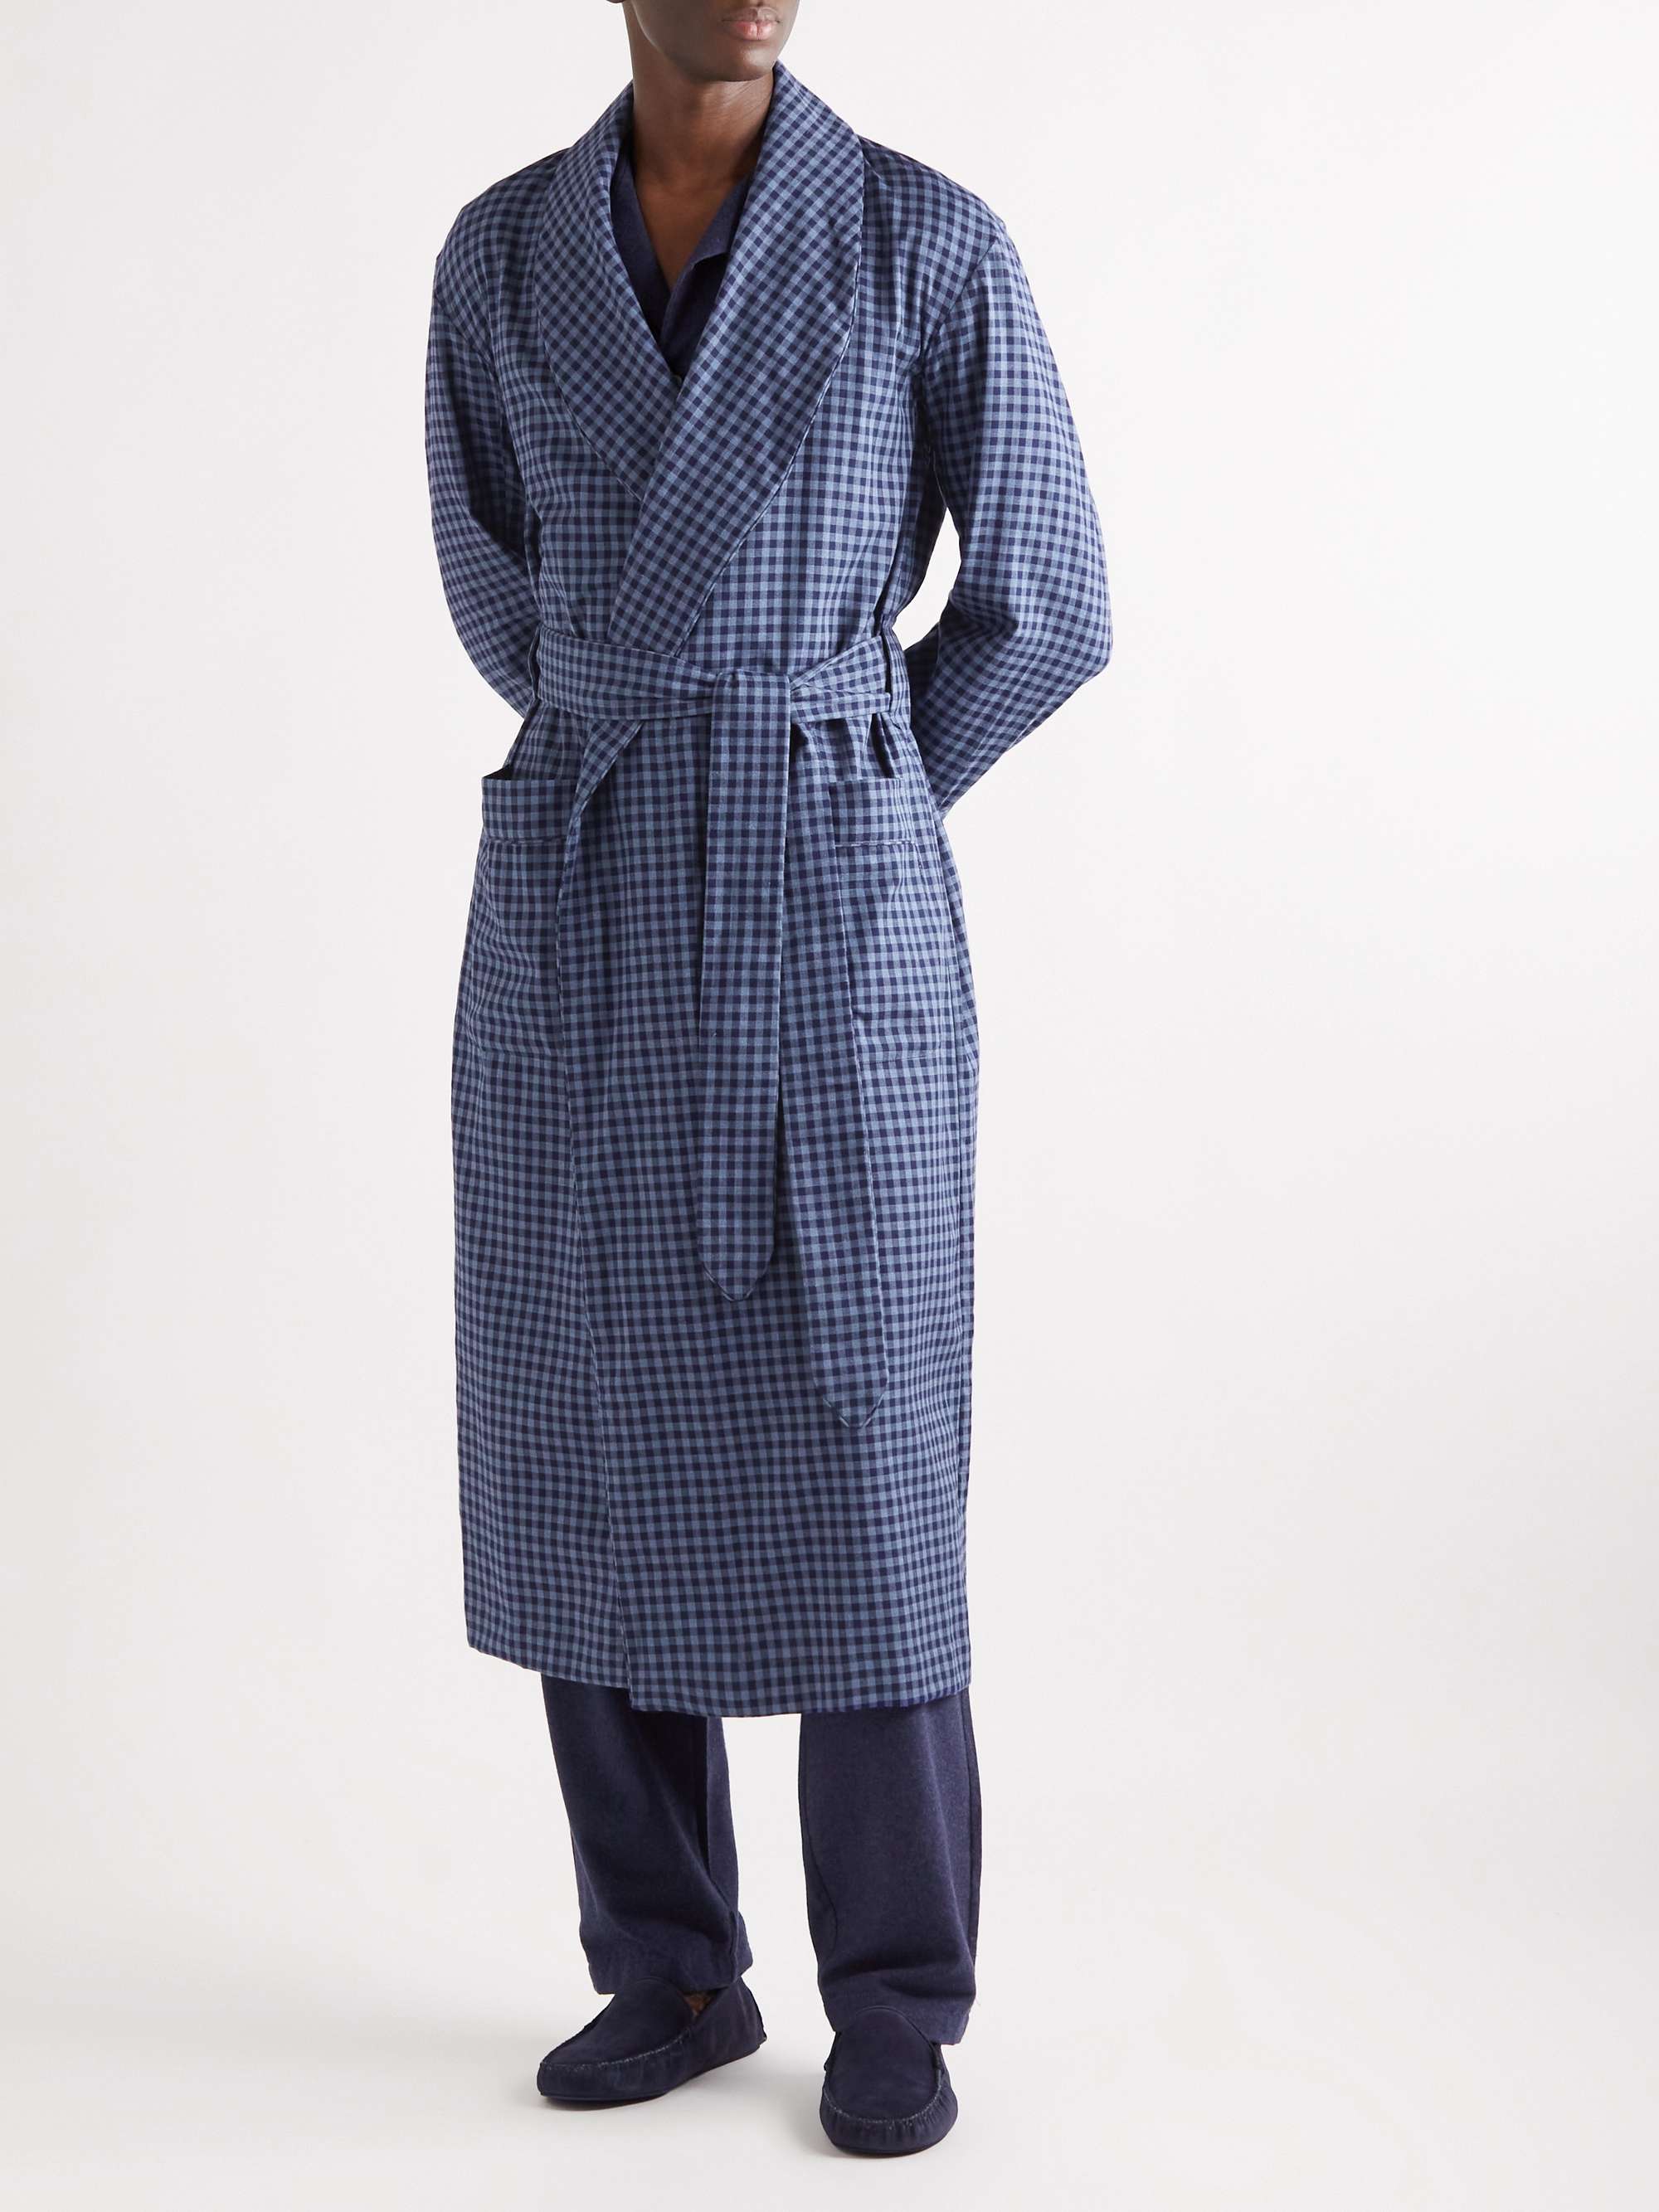 EMMA WILLIS Gingham Cotton-Flannel Robe for Men | MR PORTER